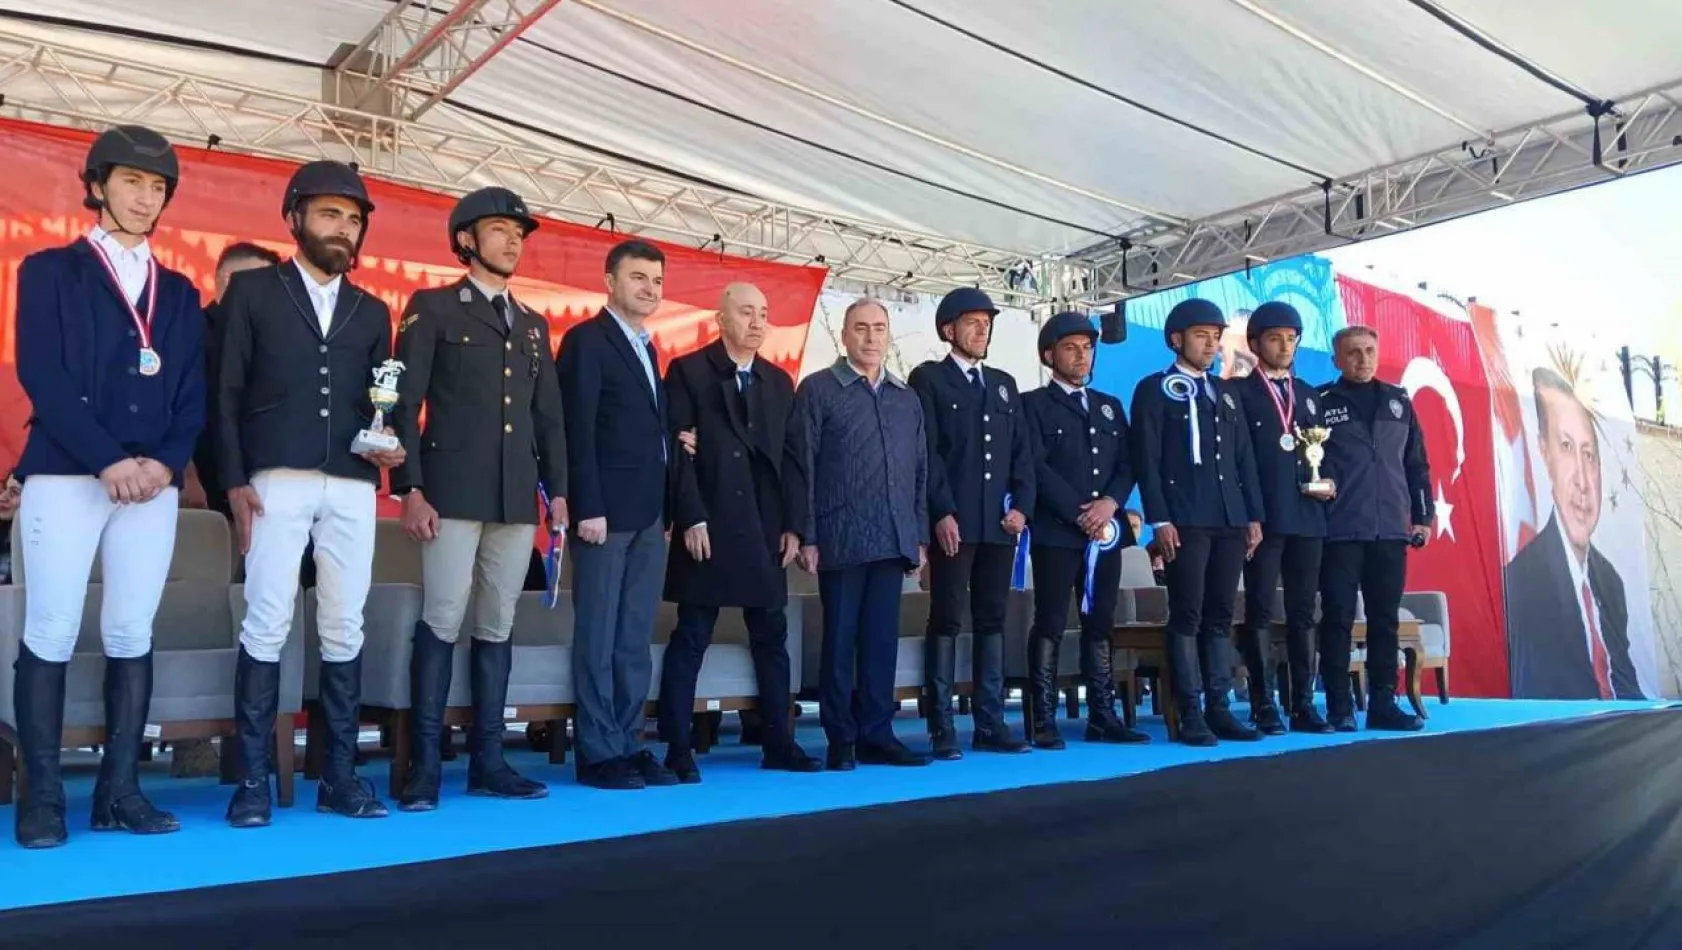 '10 Nisan Polis Haftası Kupası Engel Atlama Binicilik Yarışmaları' gerçekleştirildi